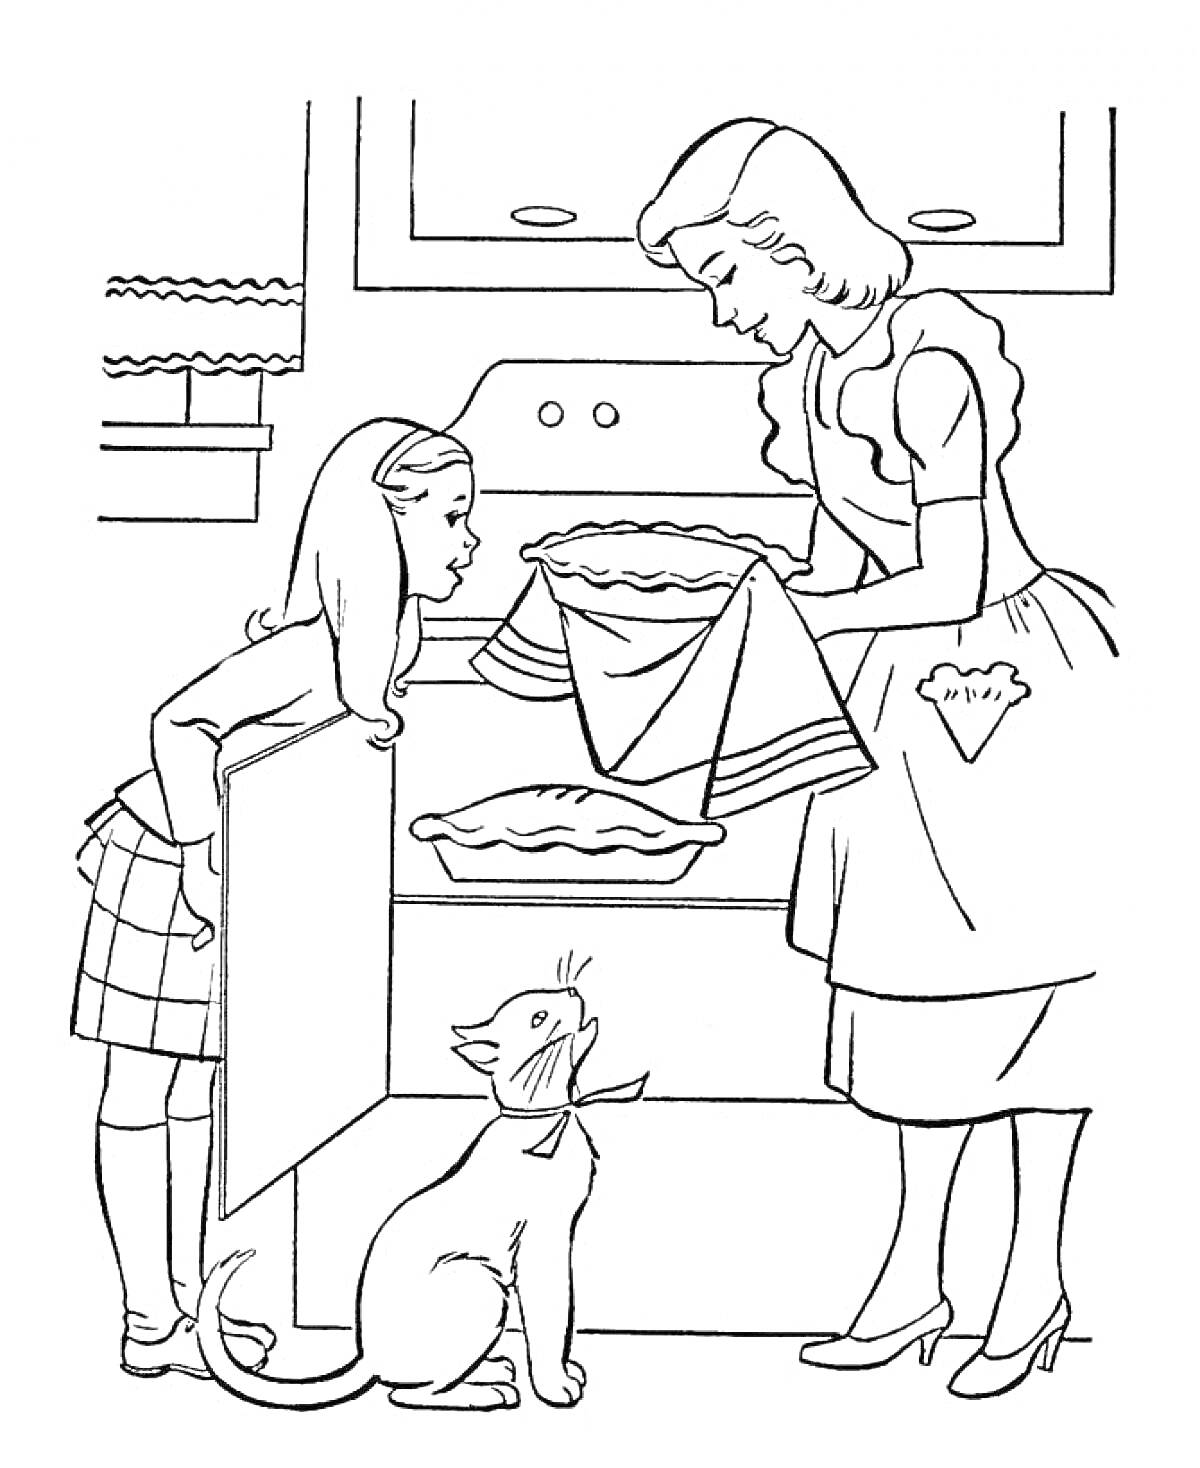 Раскраска Мама с дочкой готовят пирог на кухне, рядом стоит кот